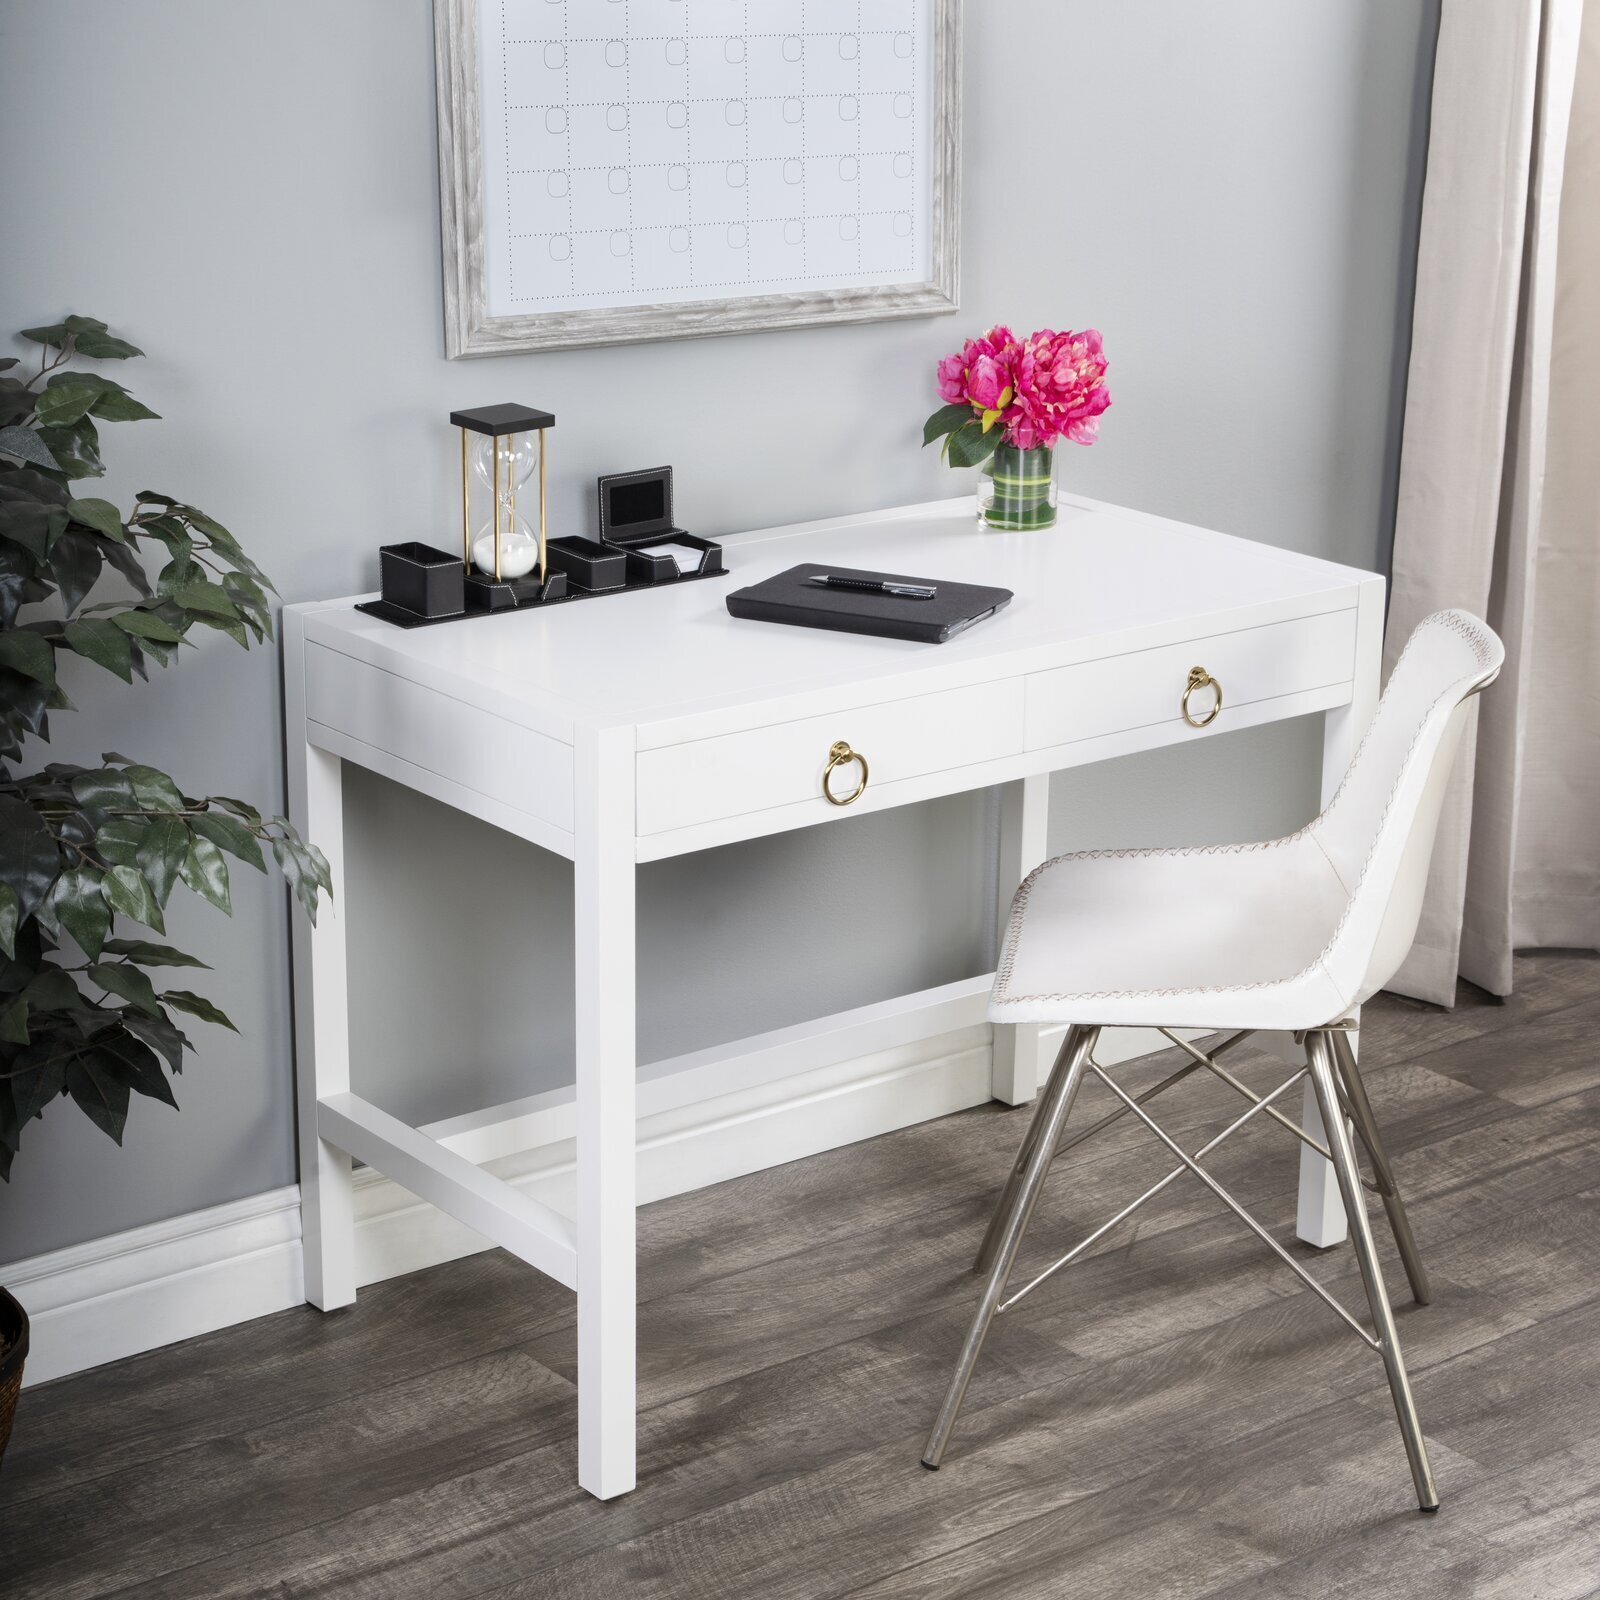 Minimalist low profile wooden office desk 